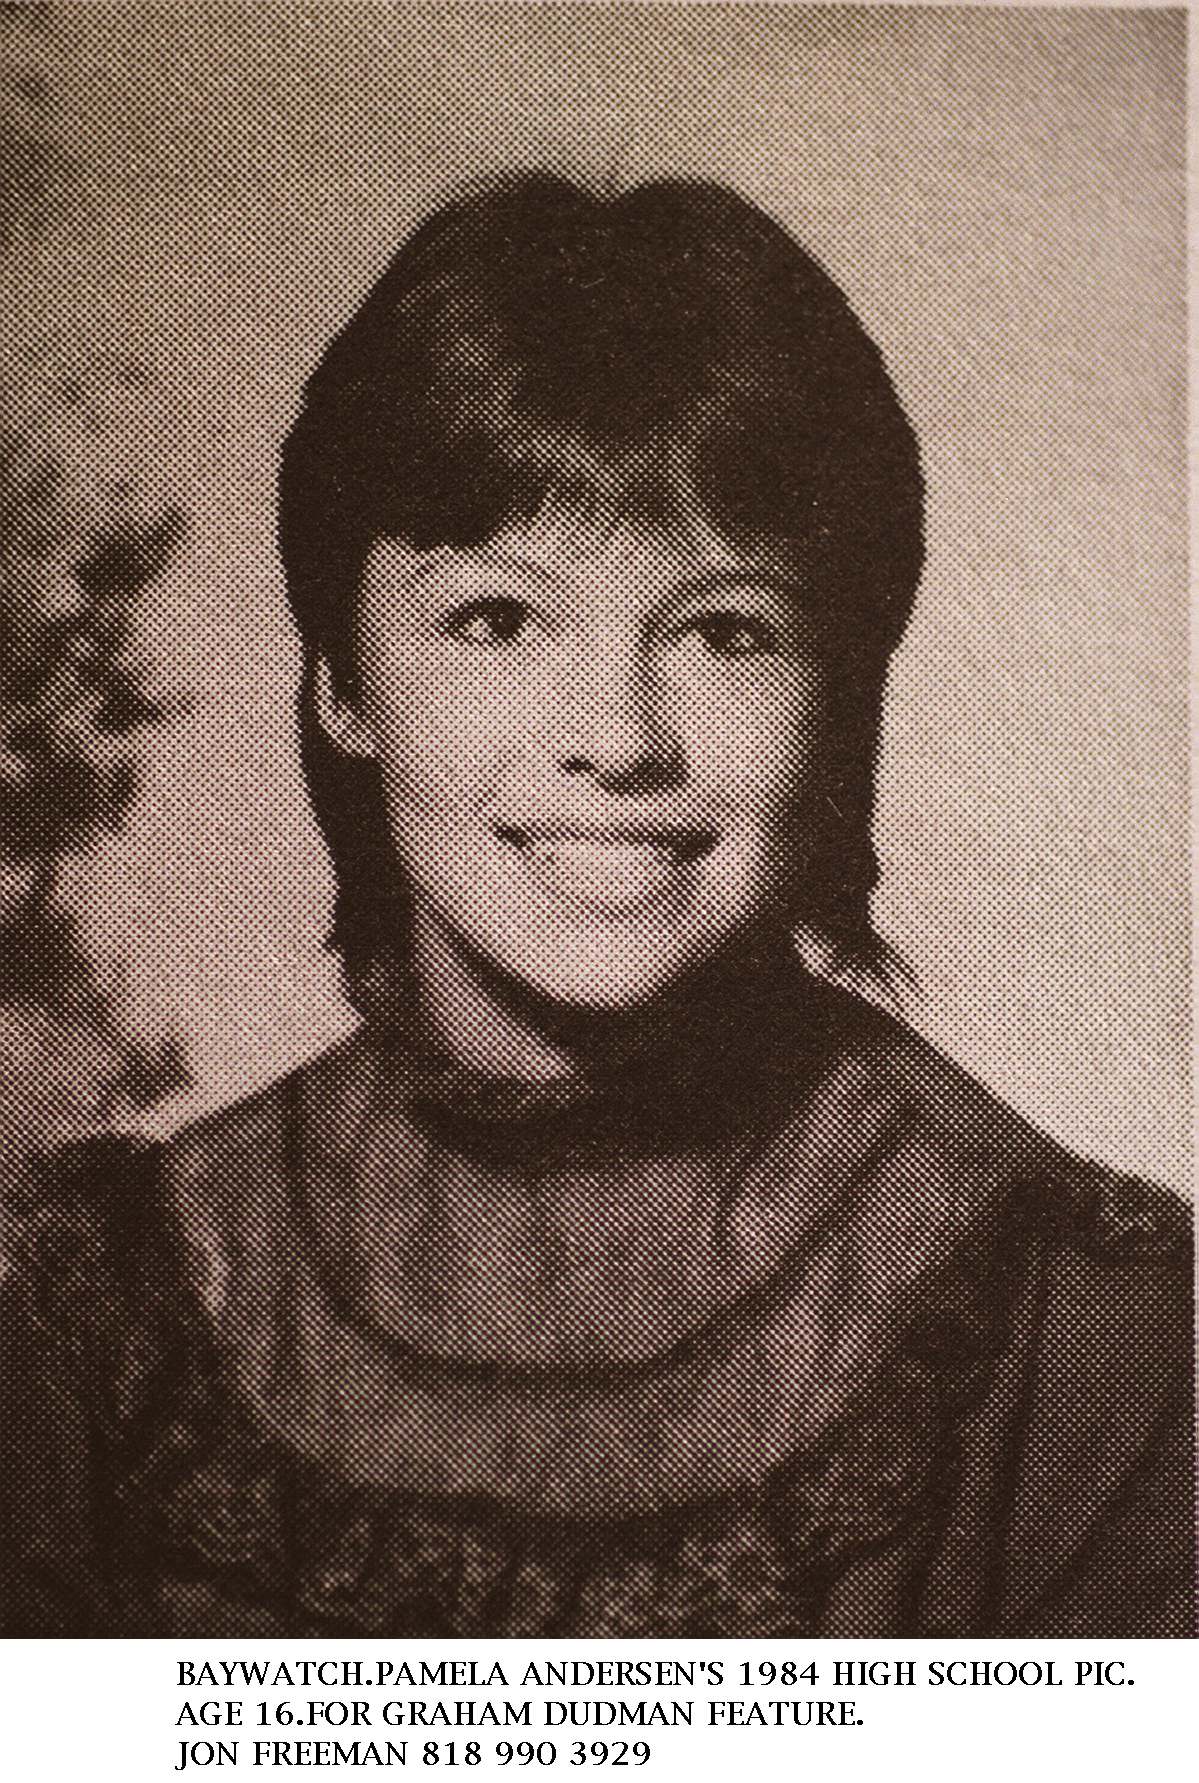 Pamela Anderson als Brünette auf ihrem Highschool-Jahrbuchfoto in Kanada, 1984 | Quelle: Getty Images